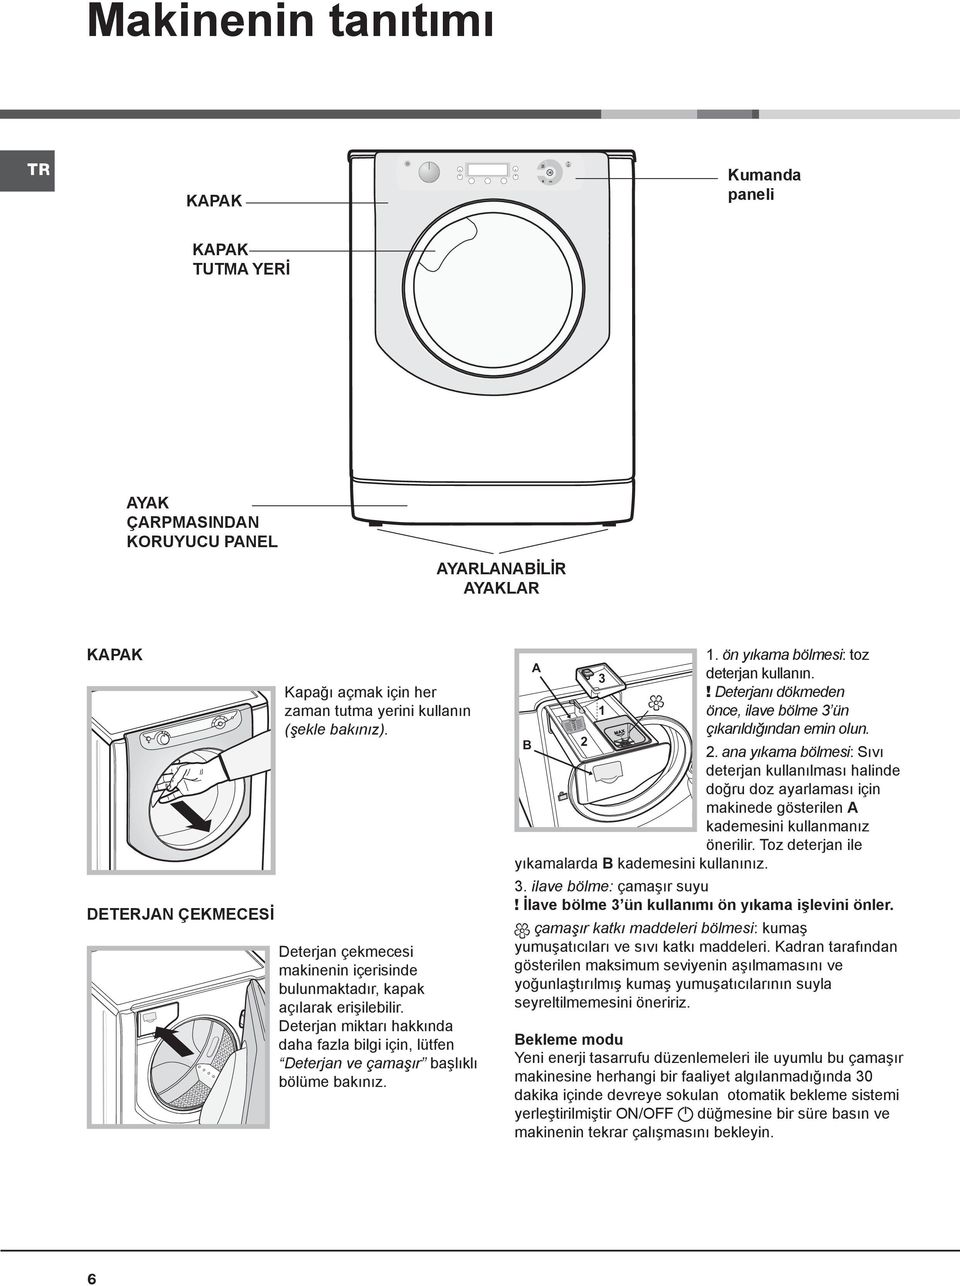 Deterjan miktarı hakkında daha fazla bilgi için, lütfen Deterjan ve çamaşır başlıklı bölüme bakınız. A 3 1 1. ön yıkama bölmesi: toz deterjan kullanın.